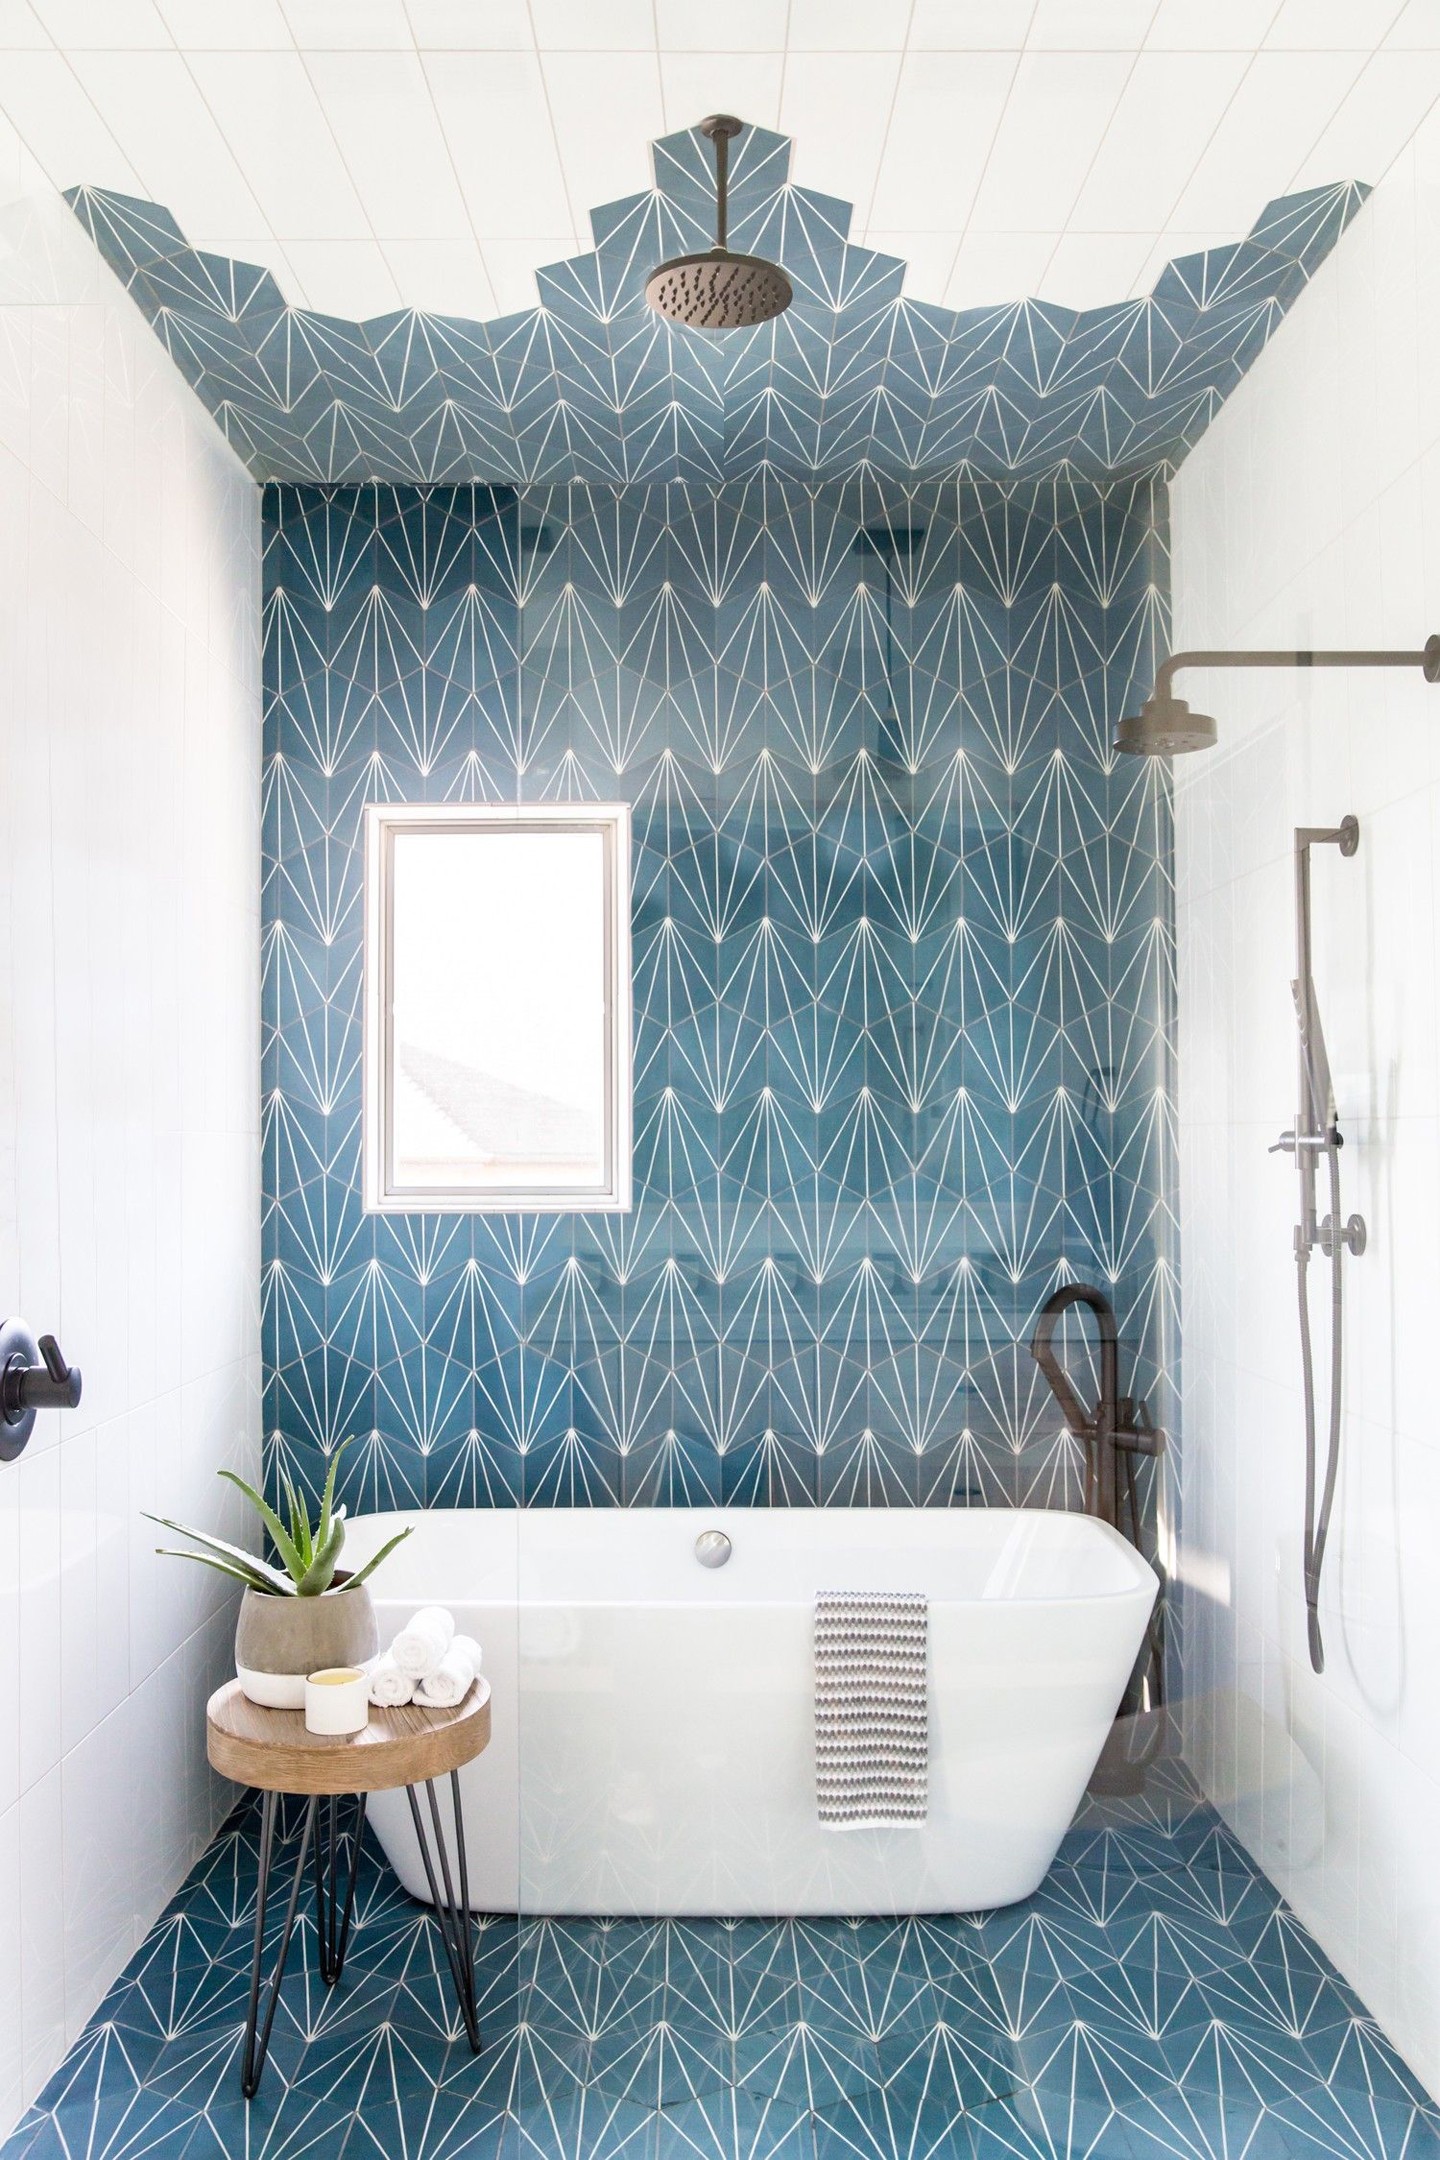 Décor do dia: mix de azulejos geométricos no banheiro (Foto: Divulgação)